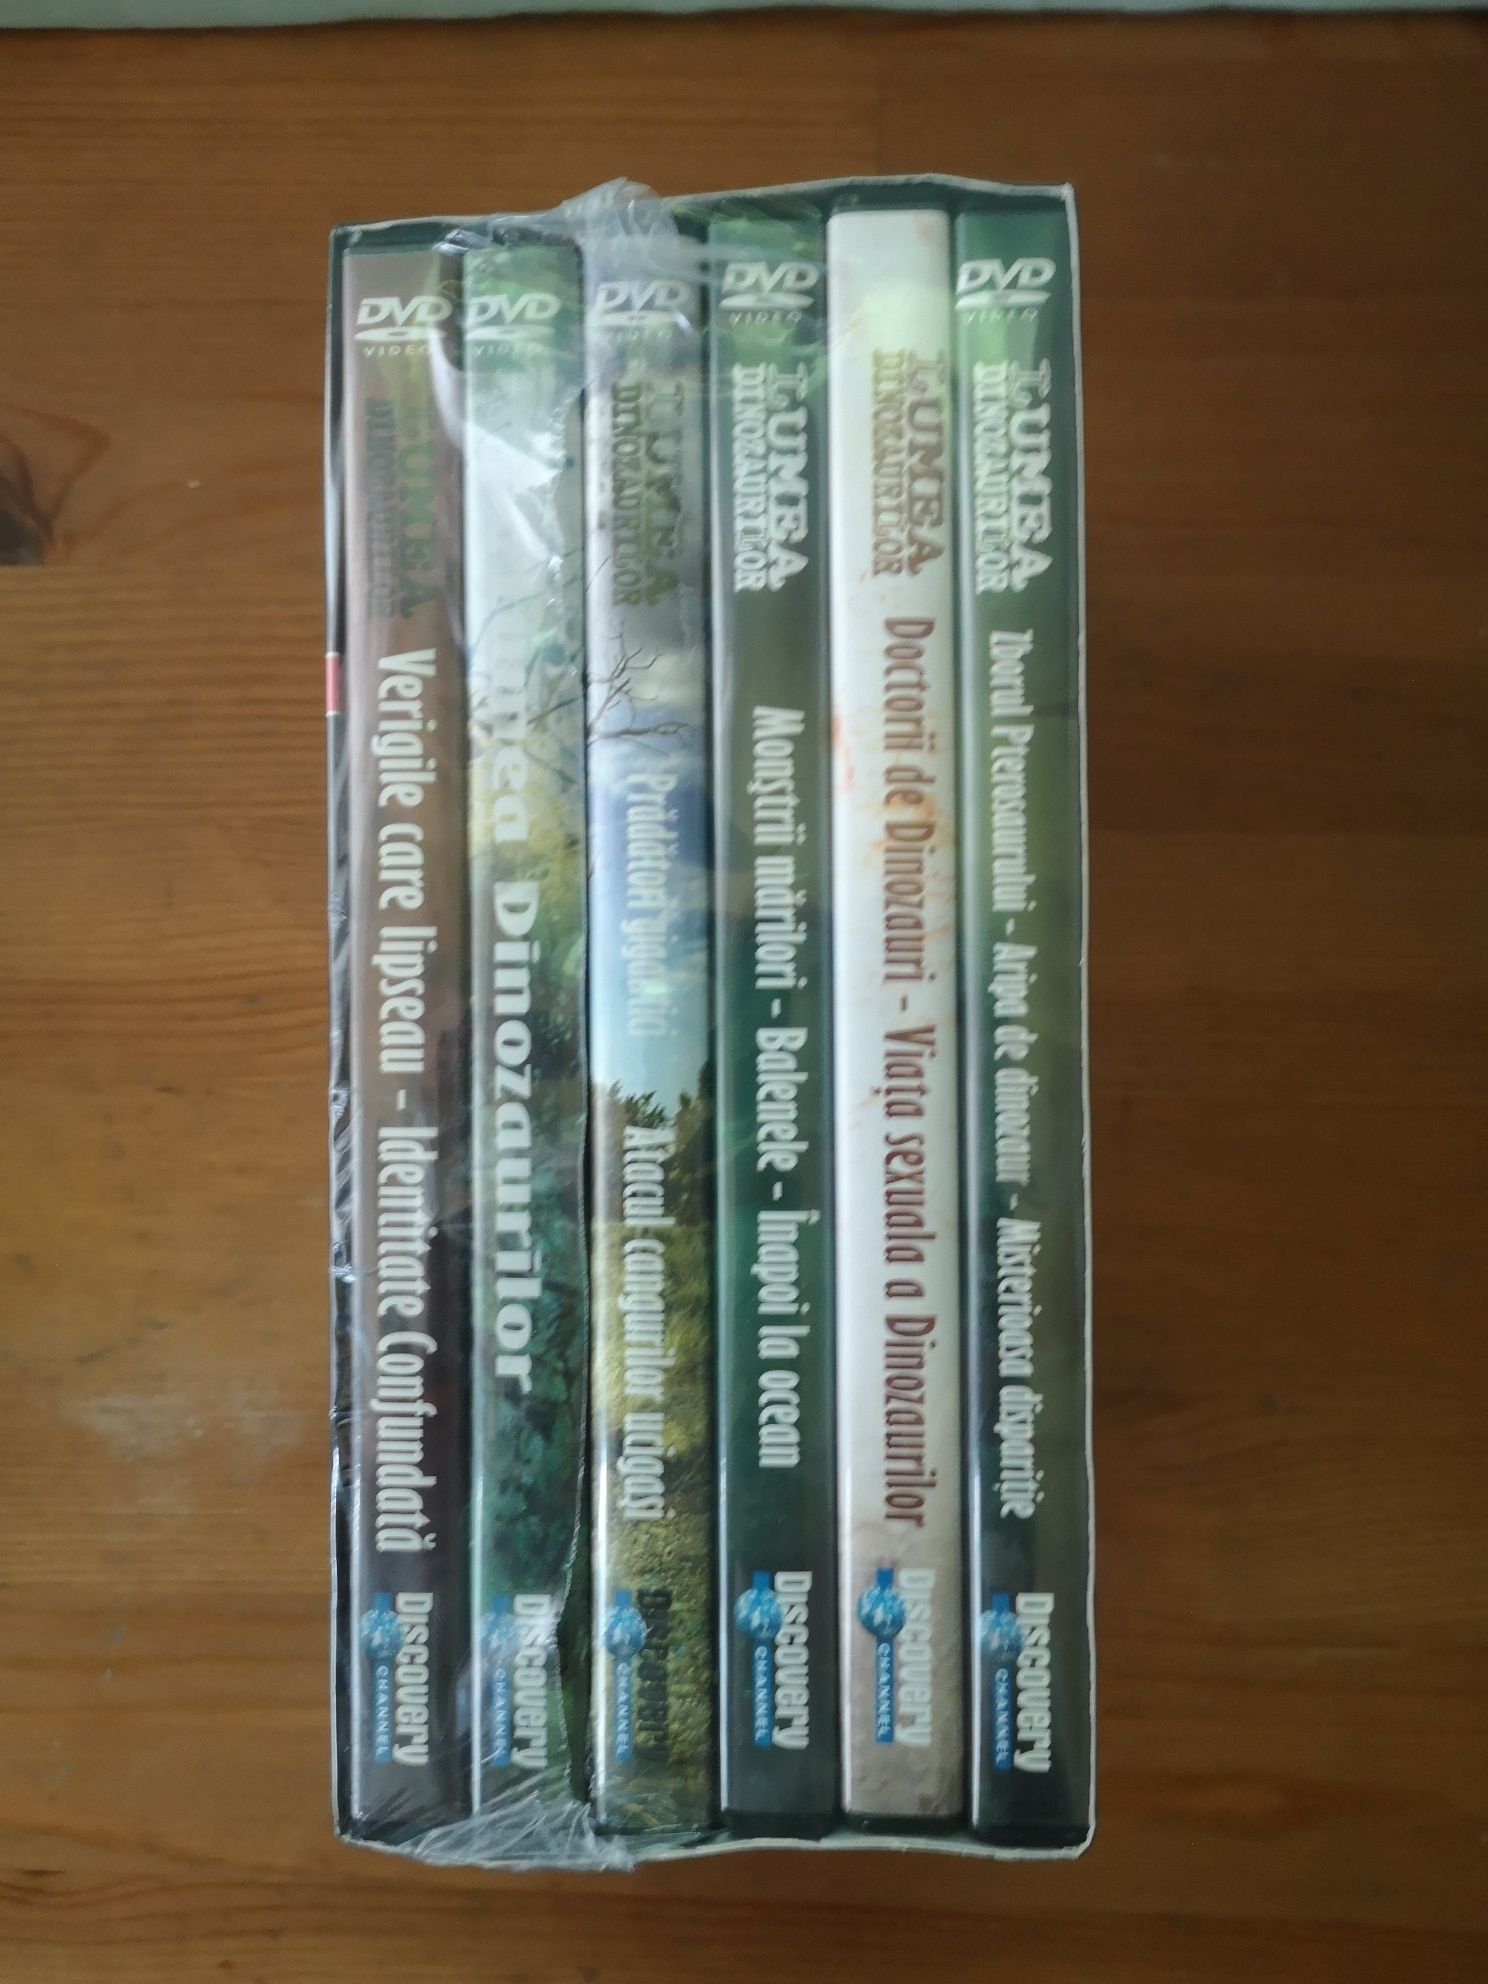 Lumea Dinozaurilor 6 dvd